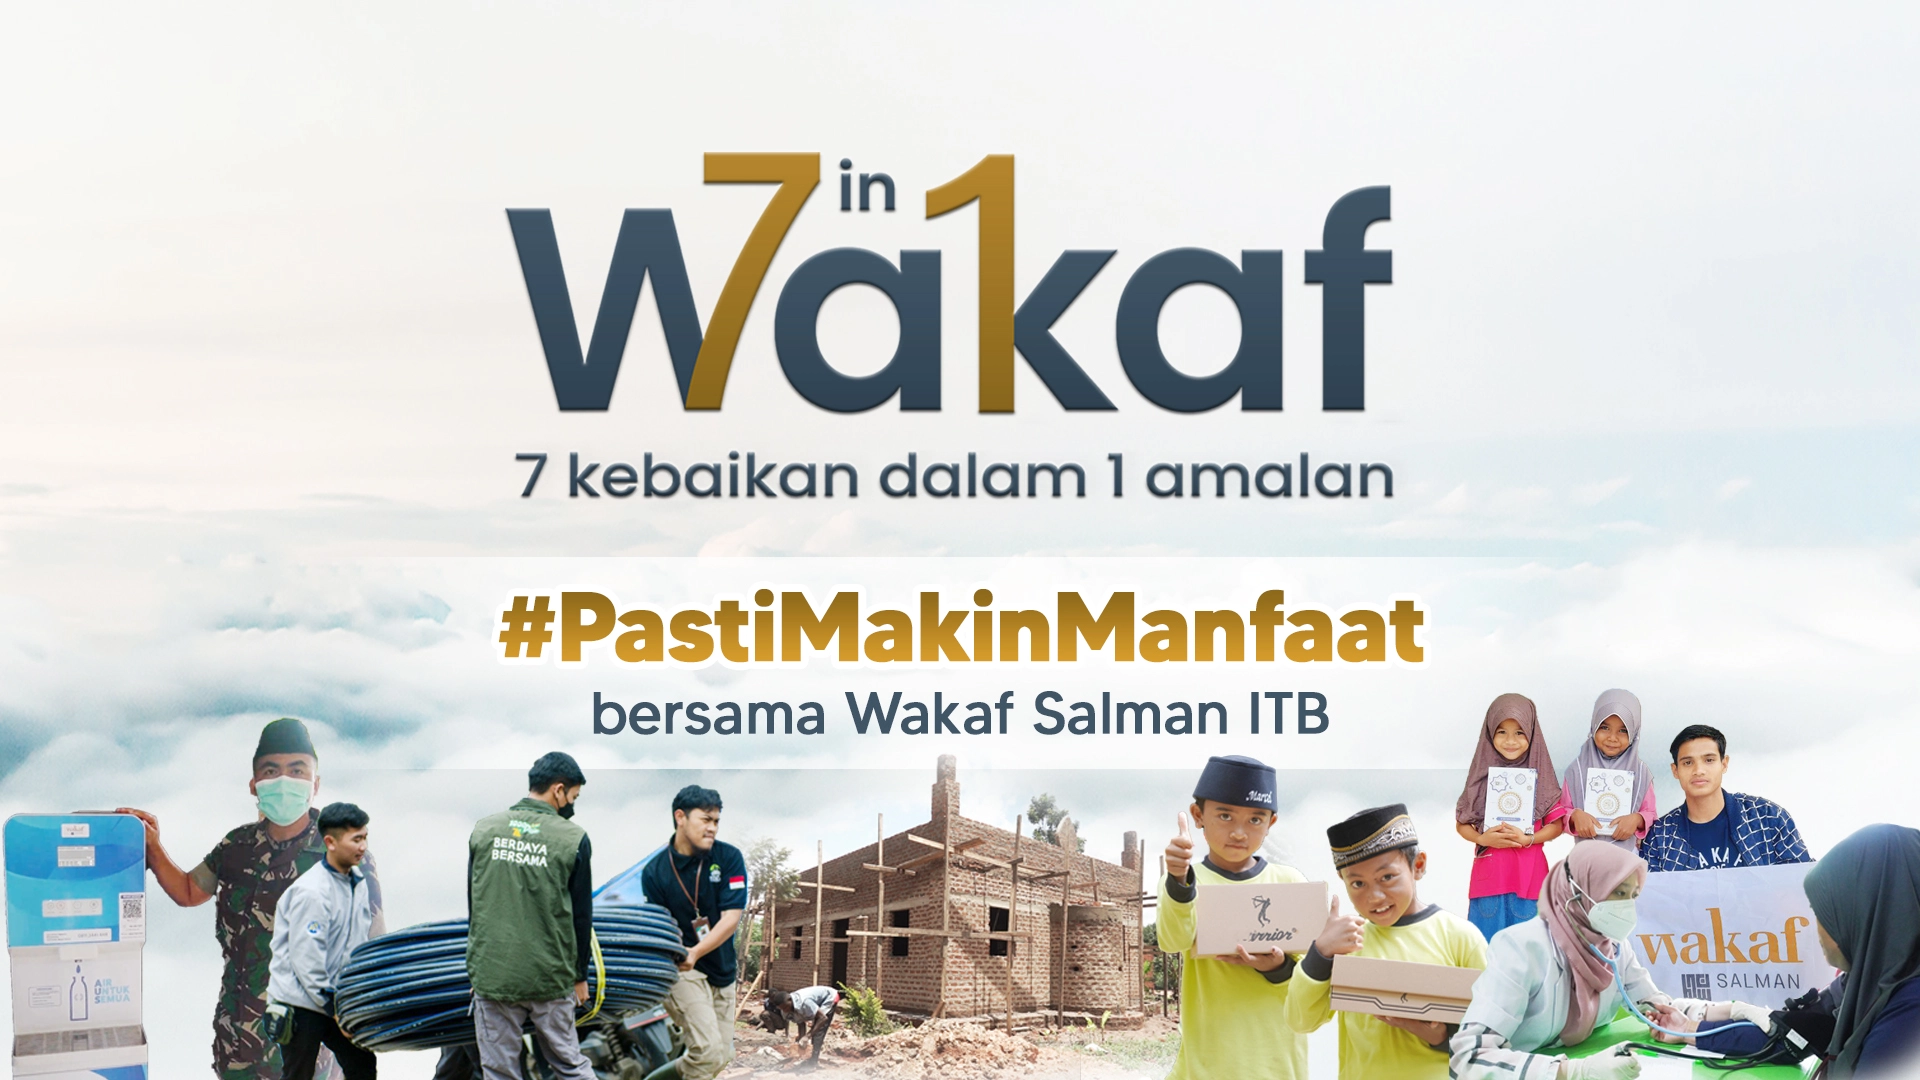 Wakaf 7 in 1 Offline